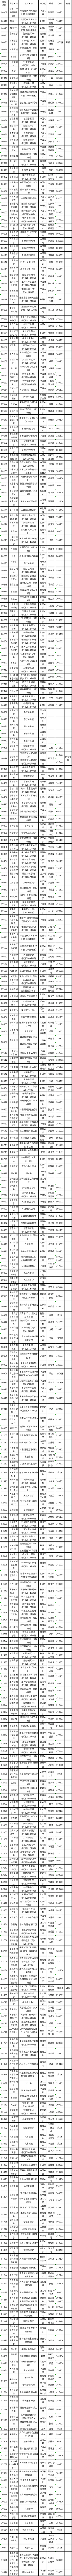 2023年4月浙江省高等教育自学考试用书目录